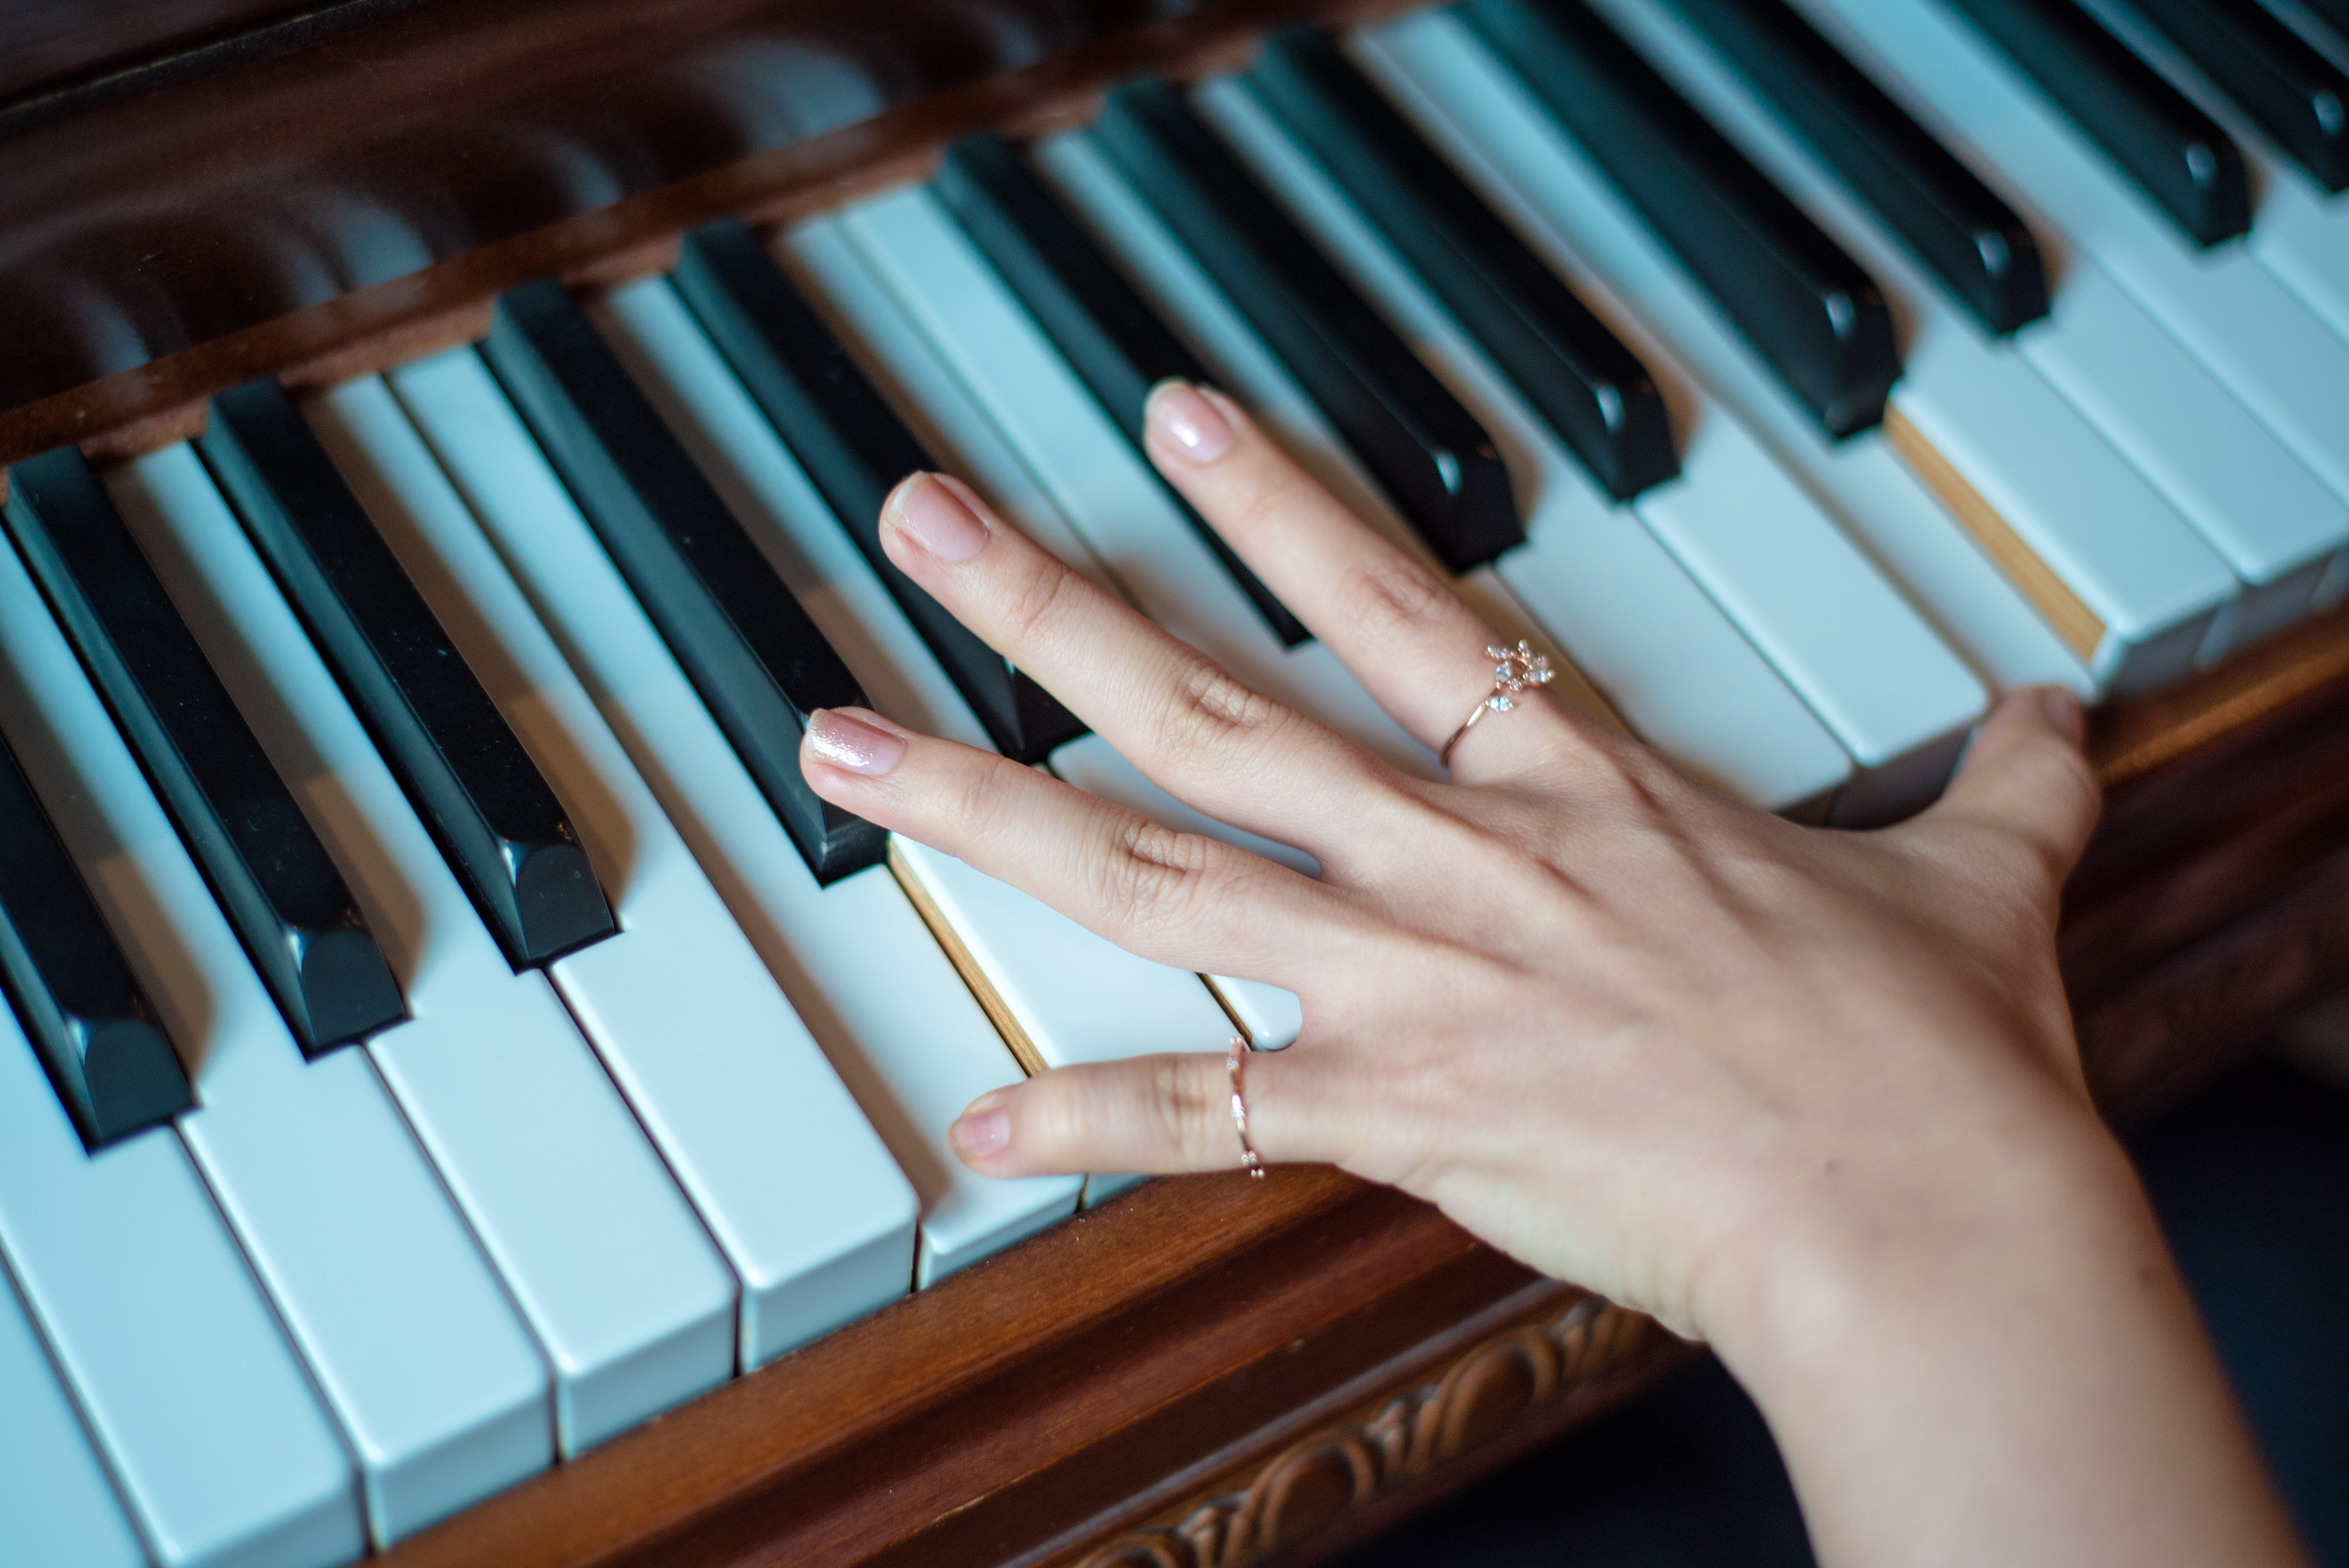 Les 6 bienfaits du piano pour votre enfant - Piano Formation